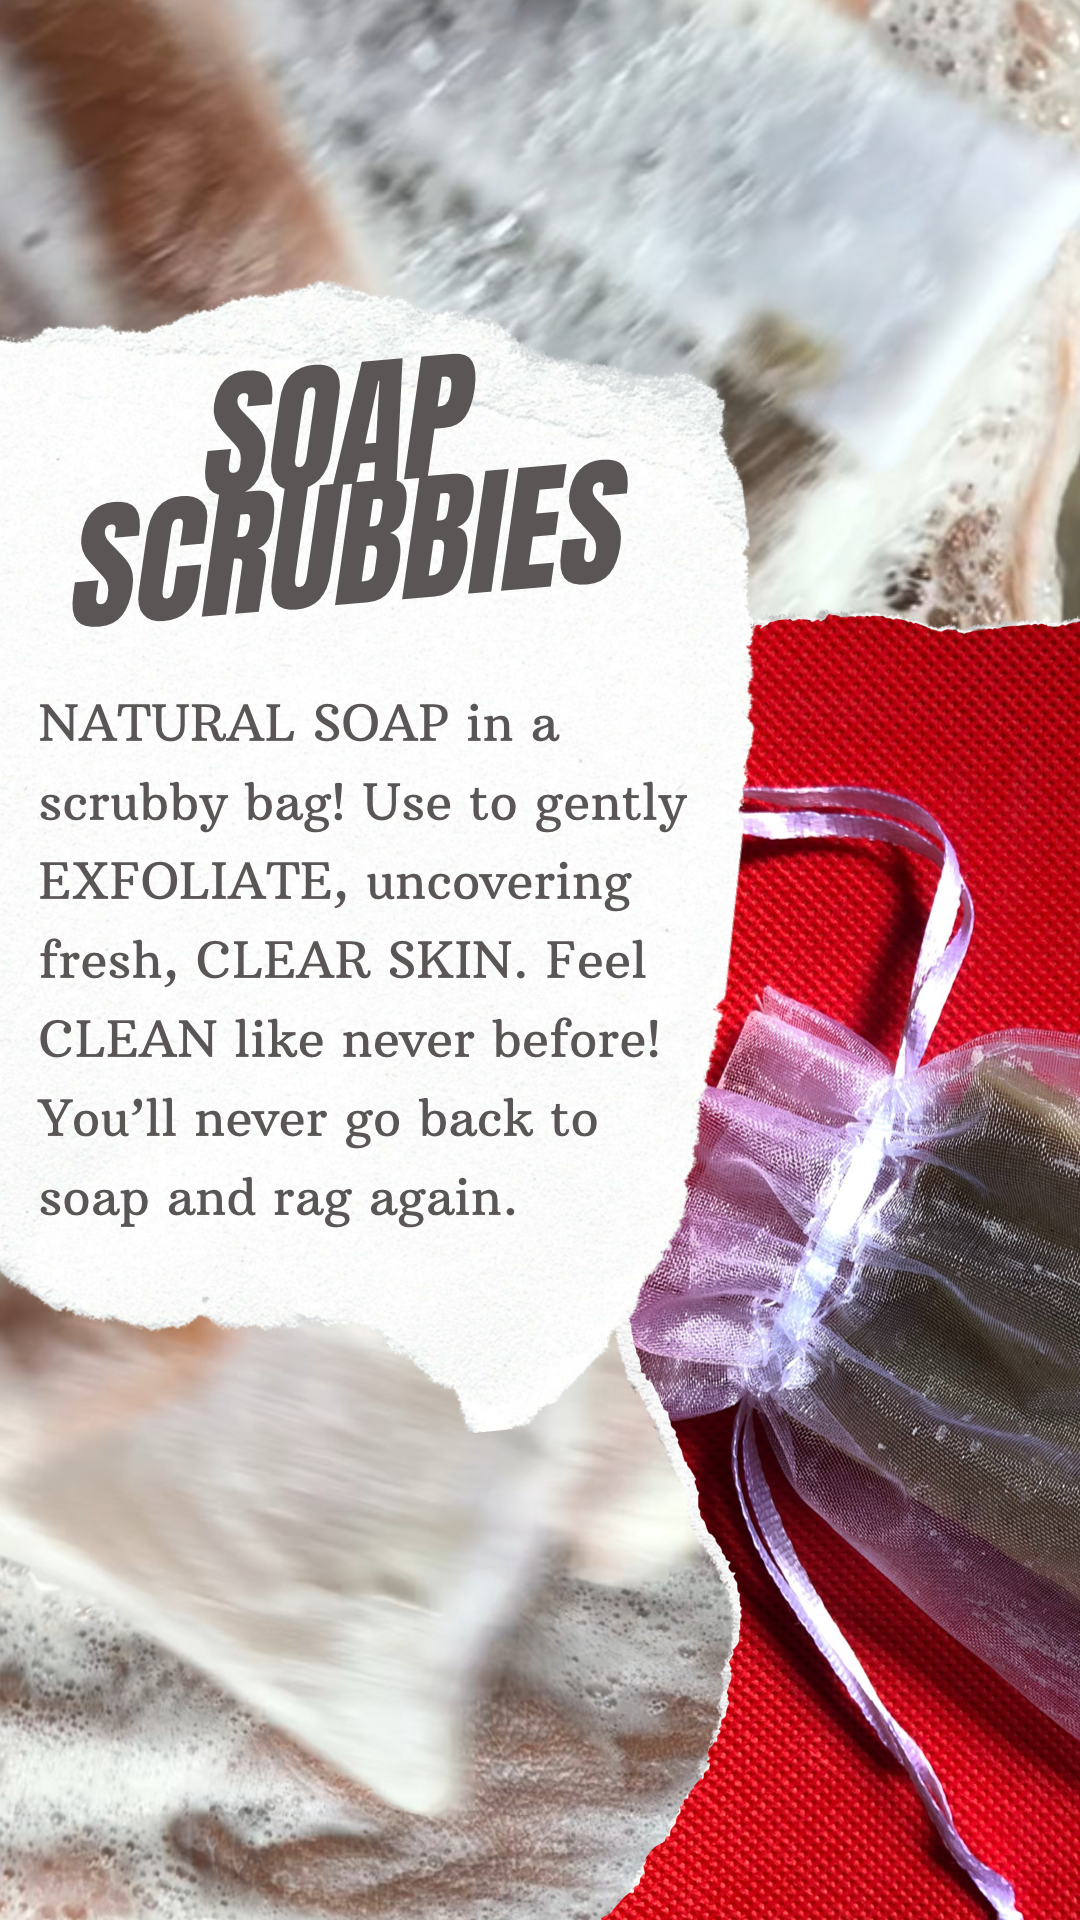 Super Kojic Soap in A Scrubby Bag